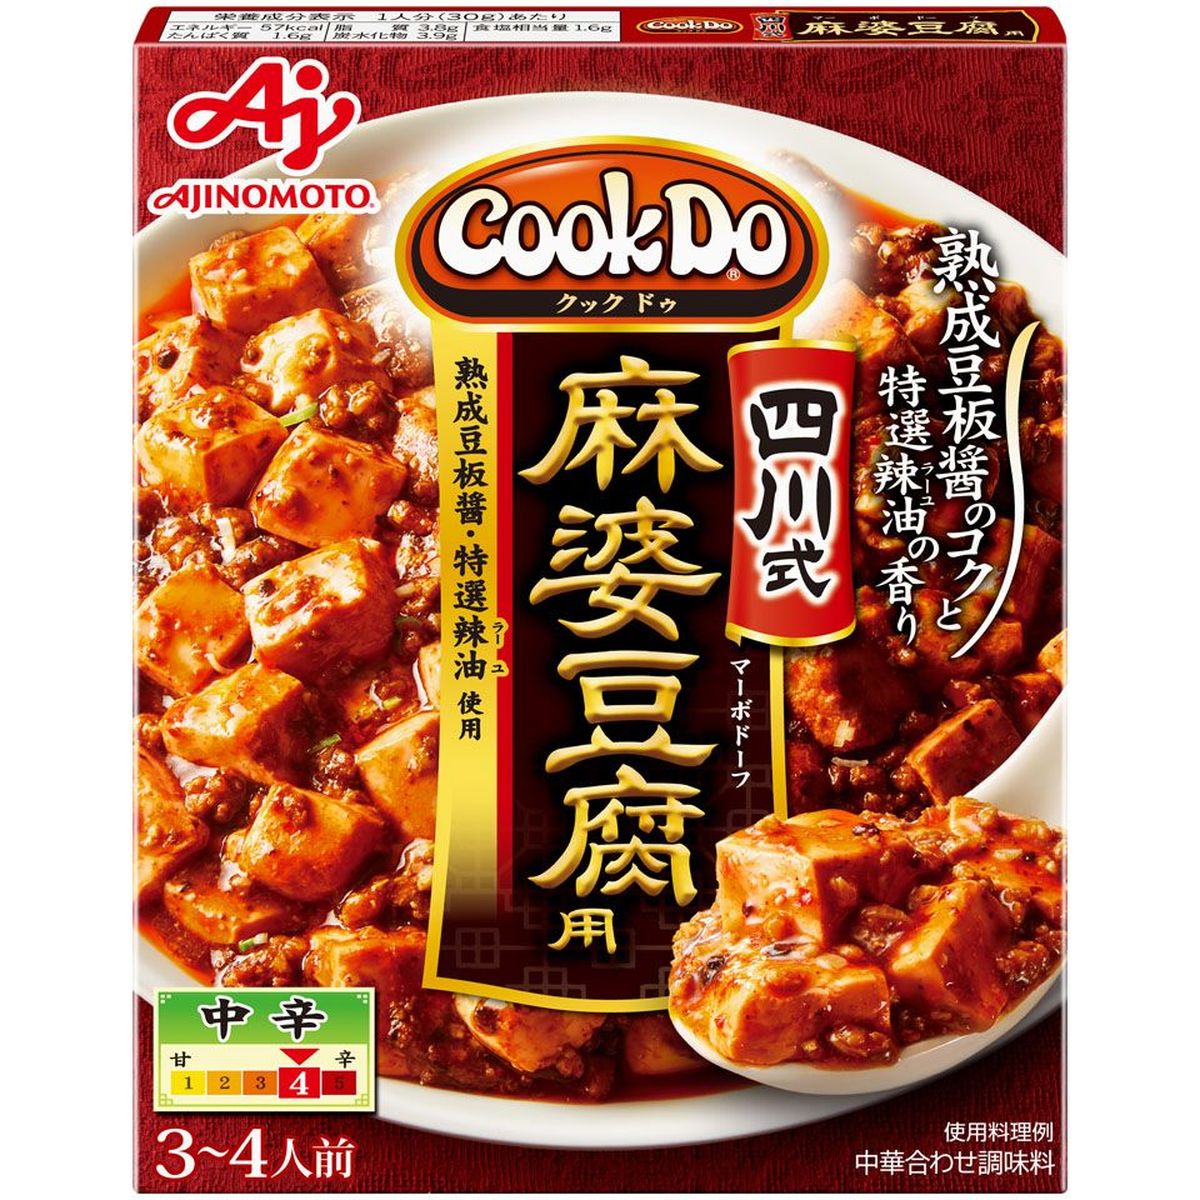 味の素AGF CookDo クックドゥー 四川式麻婆豆腐用 106.5g x 10